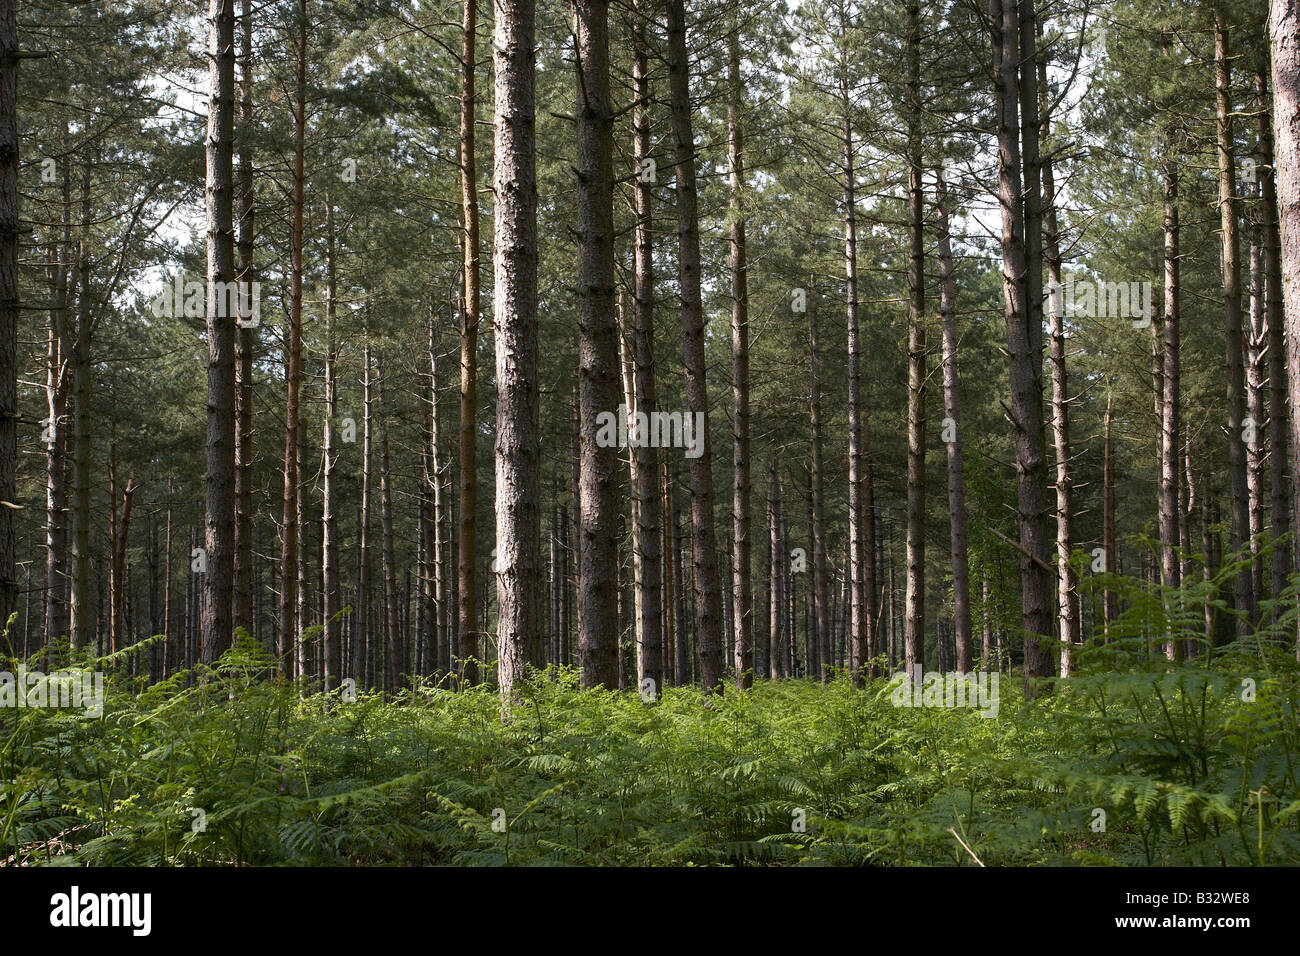 pine trees Stock Photo